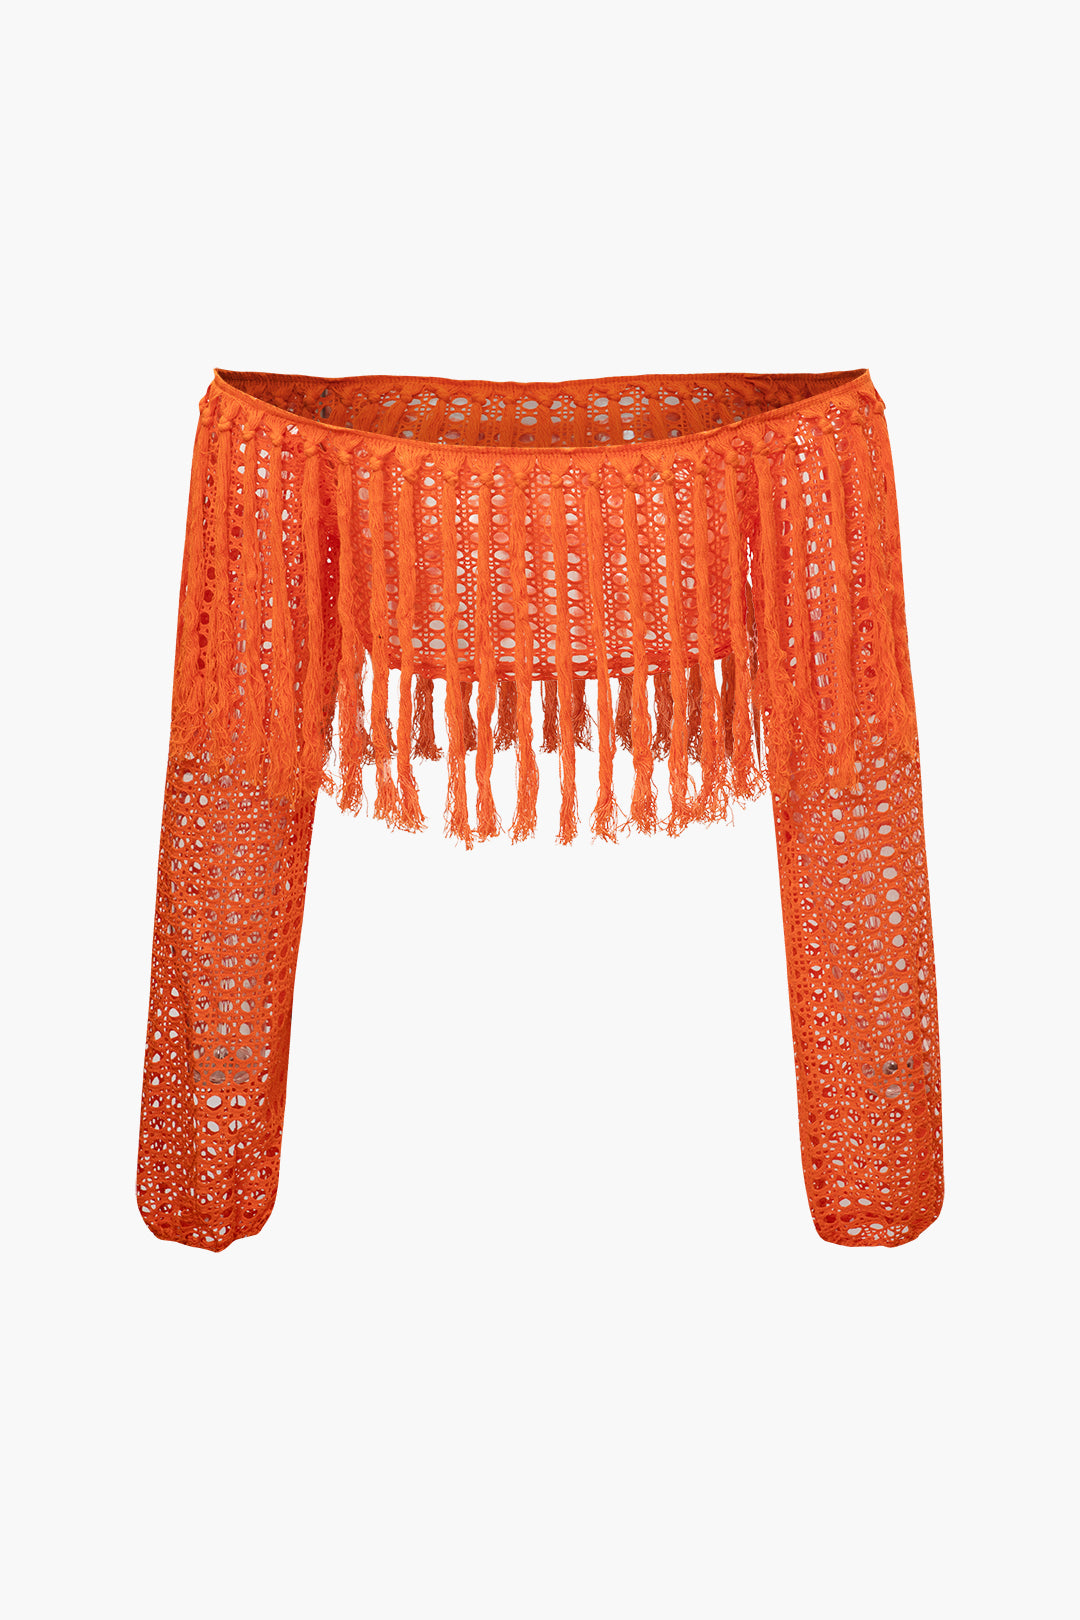 Tassel Off Shoulder Knit Crop Top And Beach Maxi Skirt Set